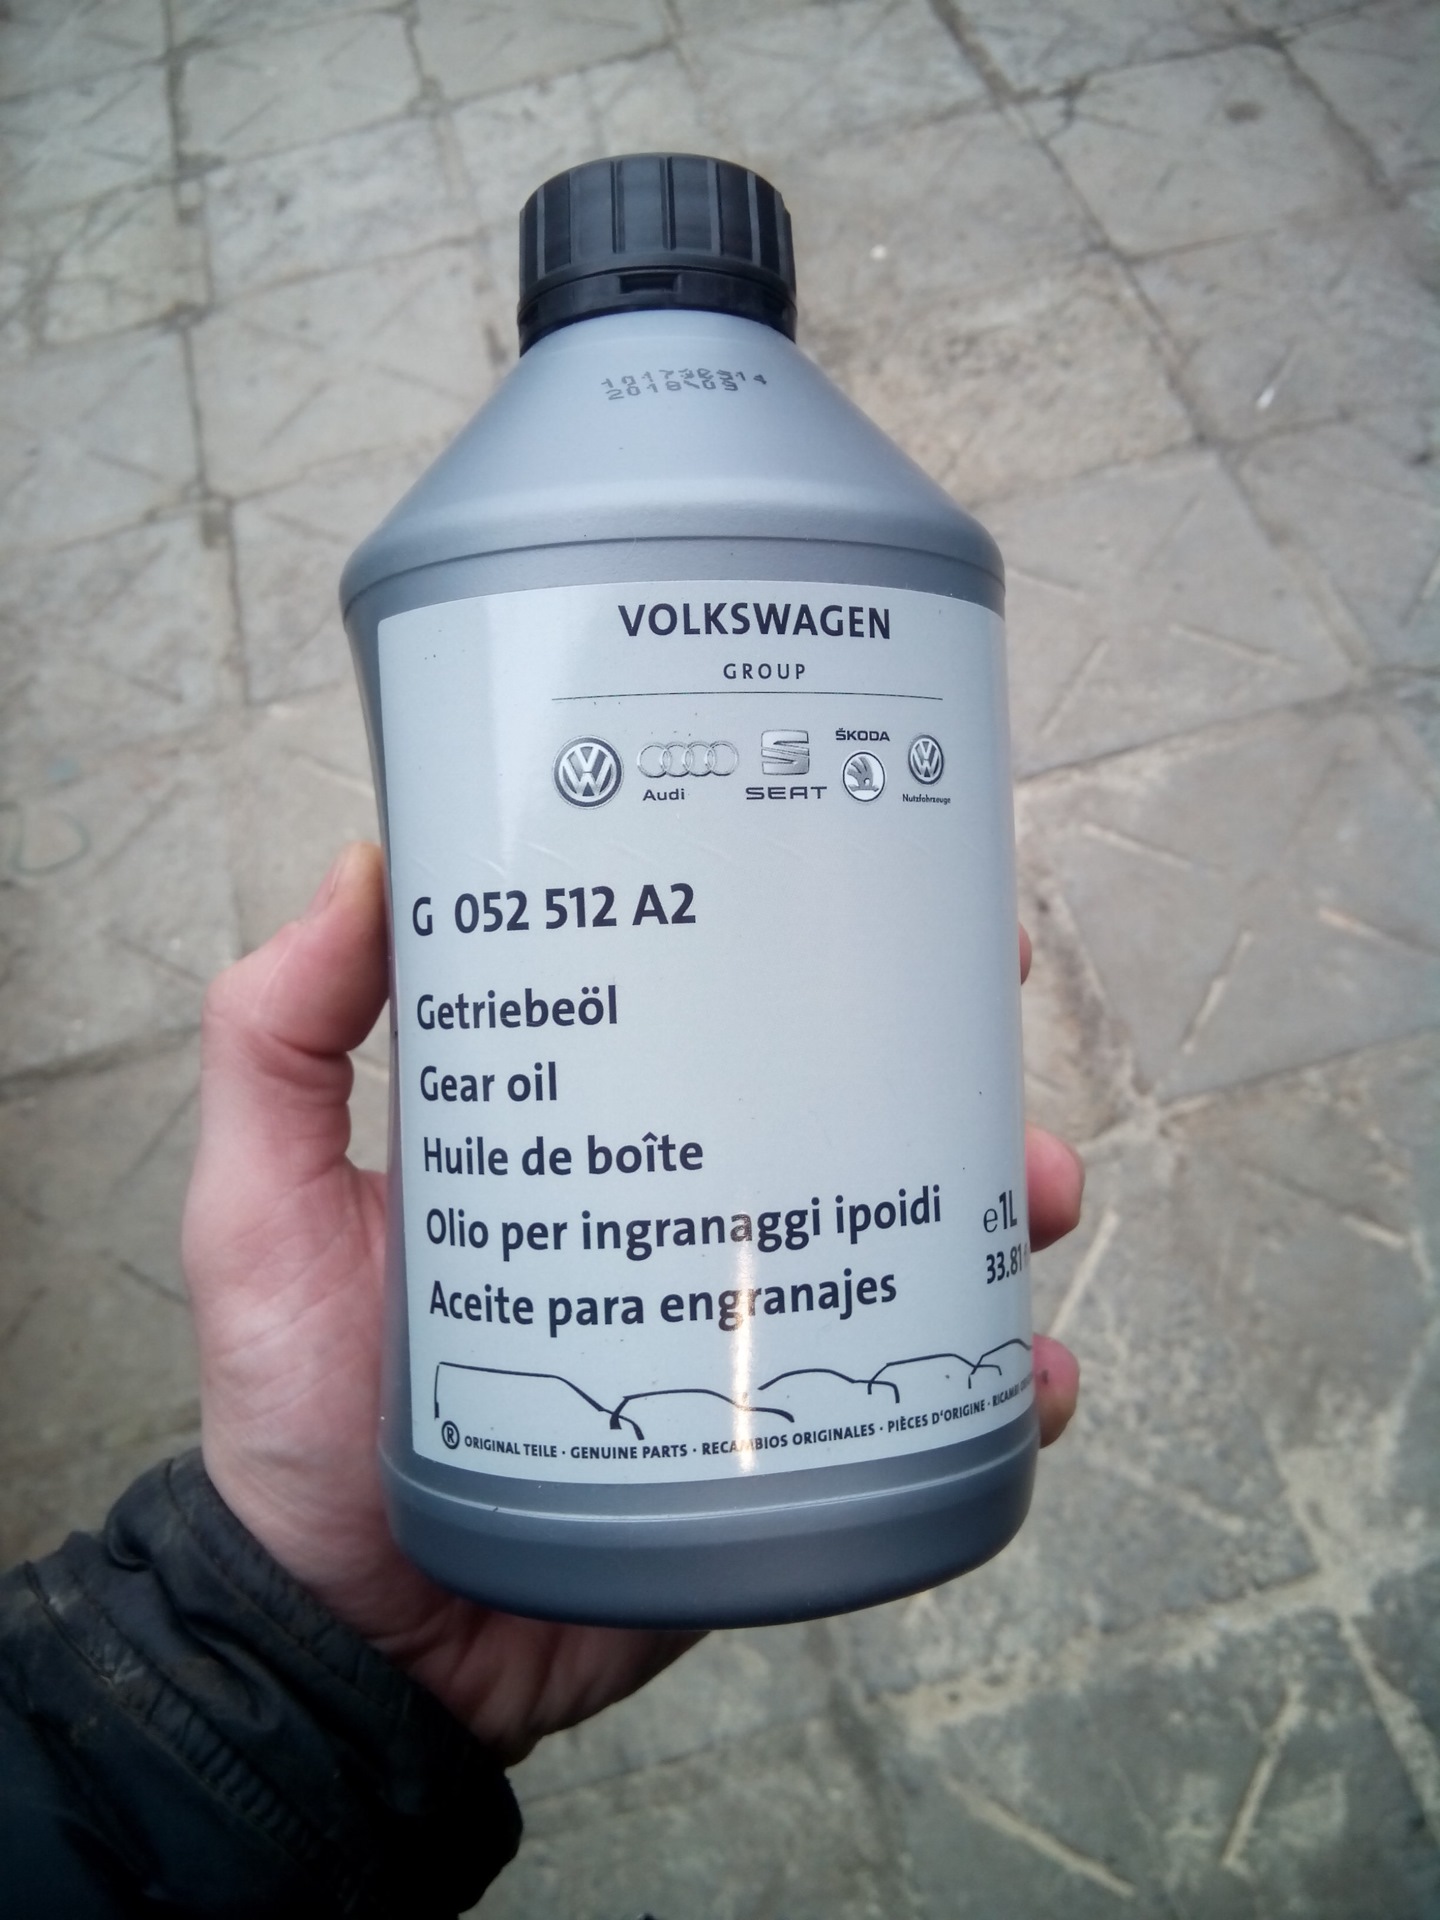 Фольксваген джетта 6 какое масло лить в двигатель